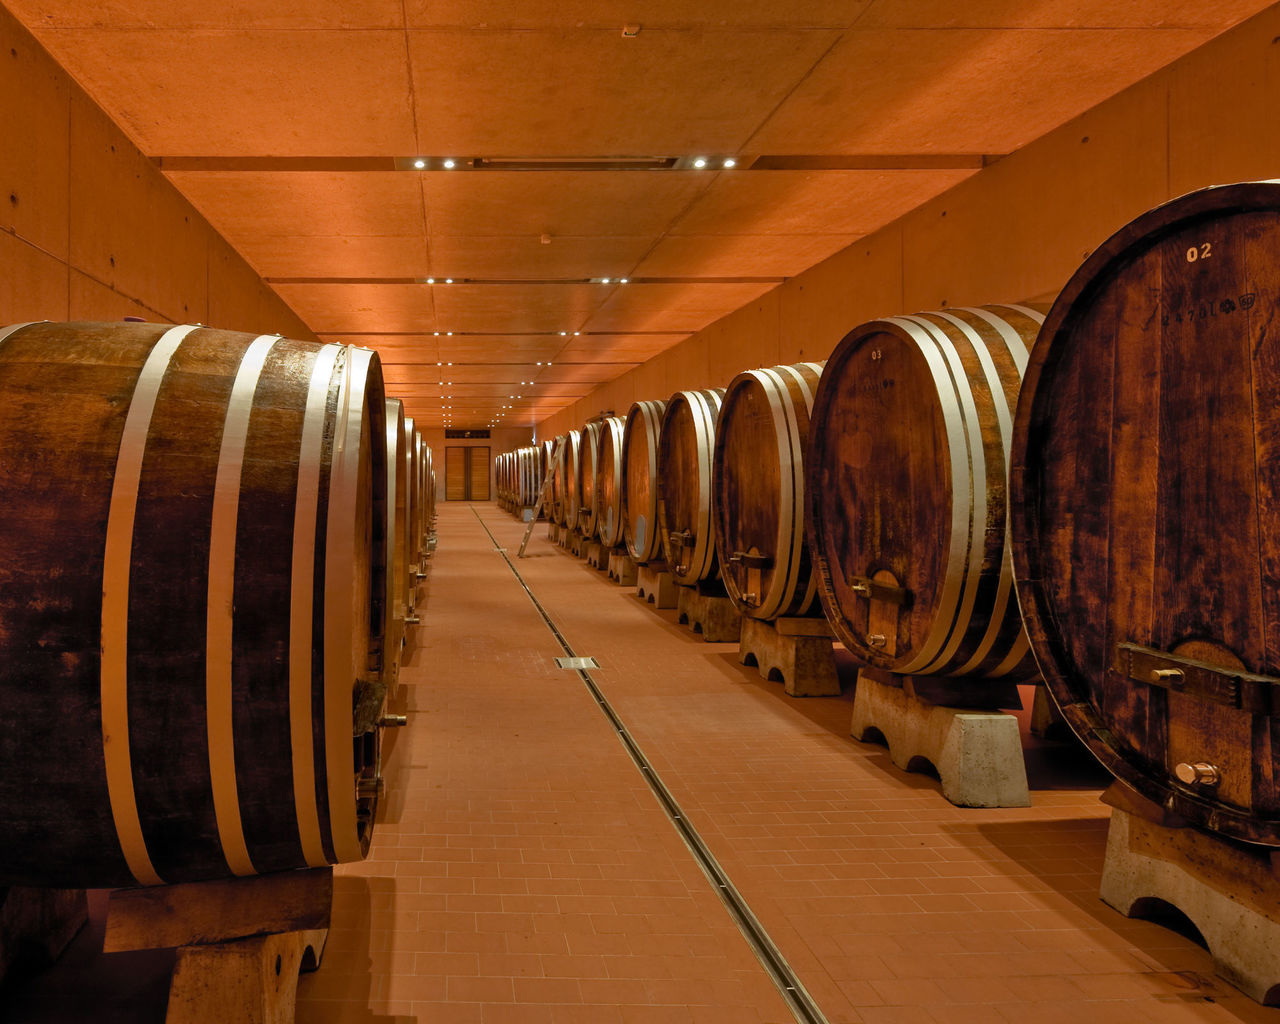 Ein langgezogener Weinkeller präsentiert Reihen von großen Fässern in angenehmer Beleuchtung